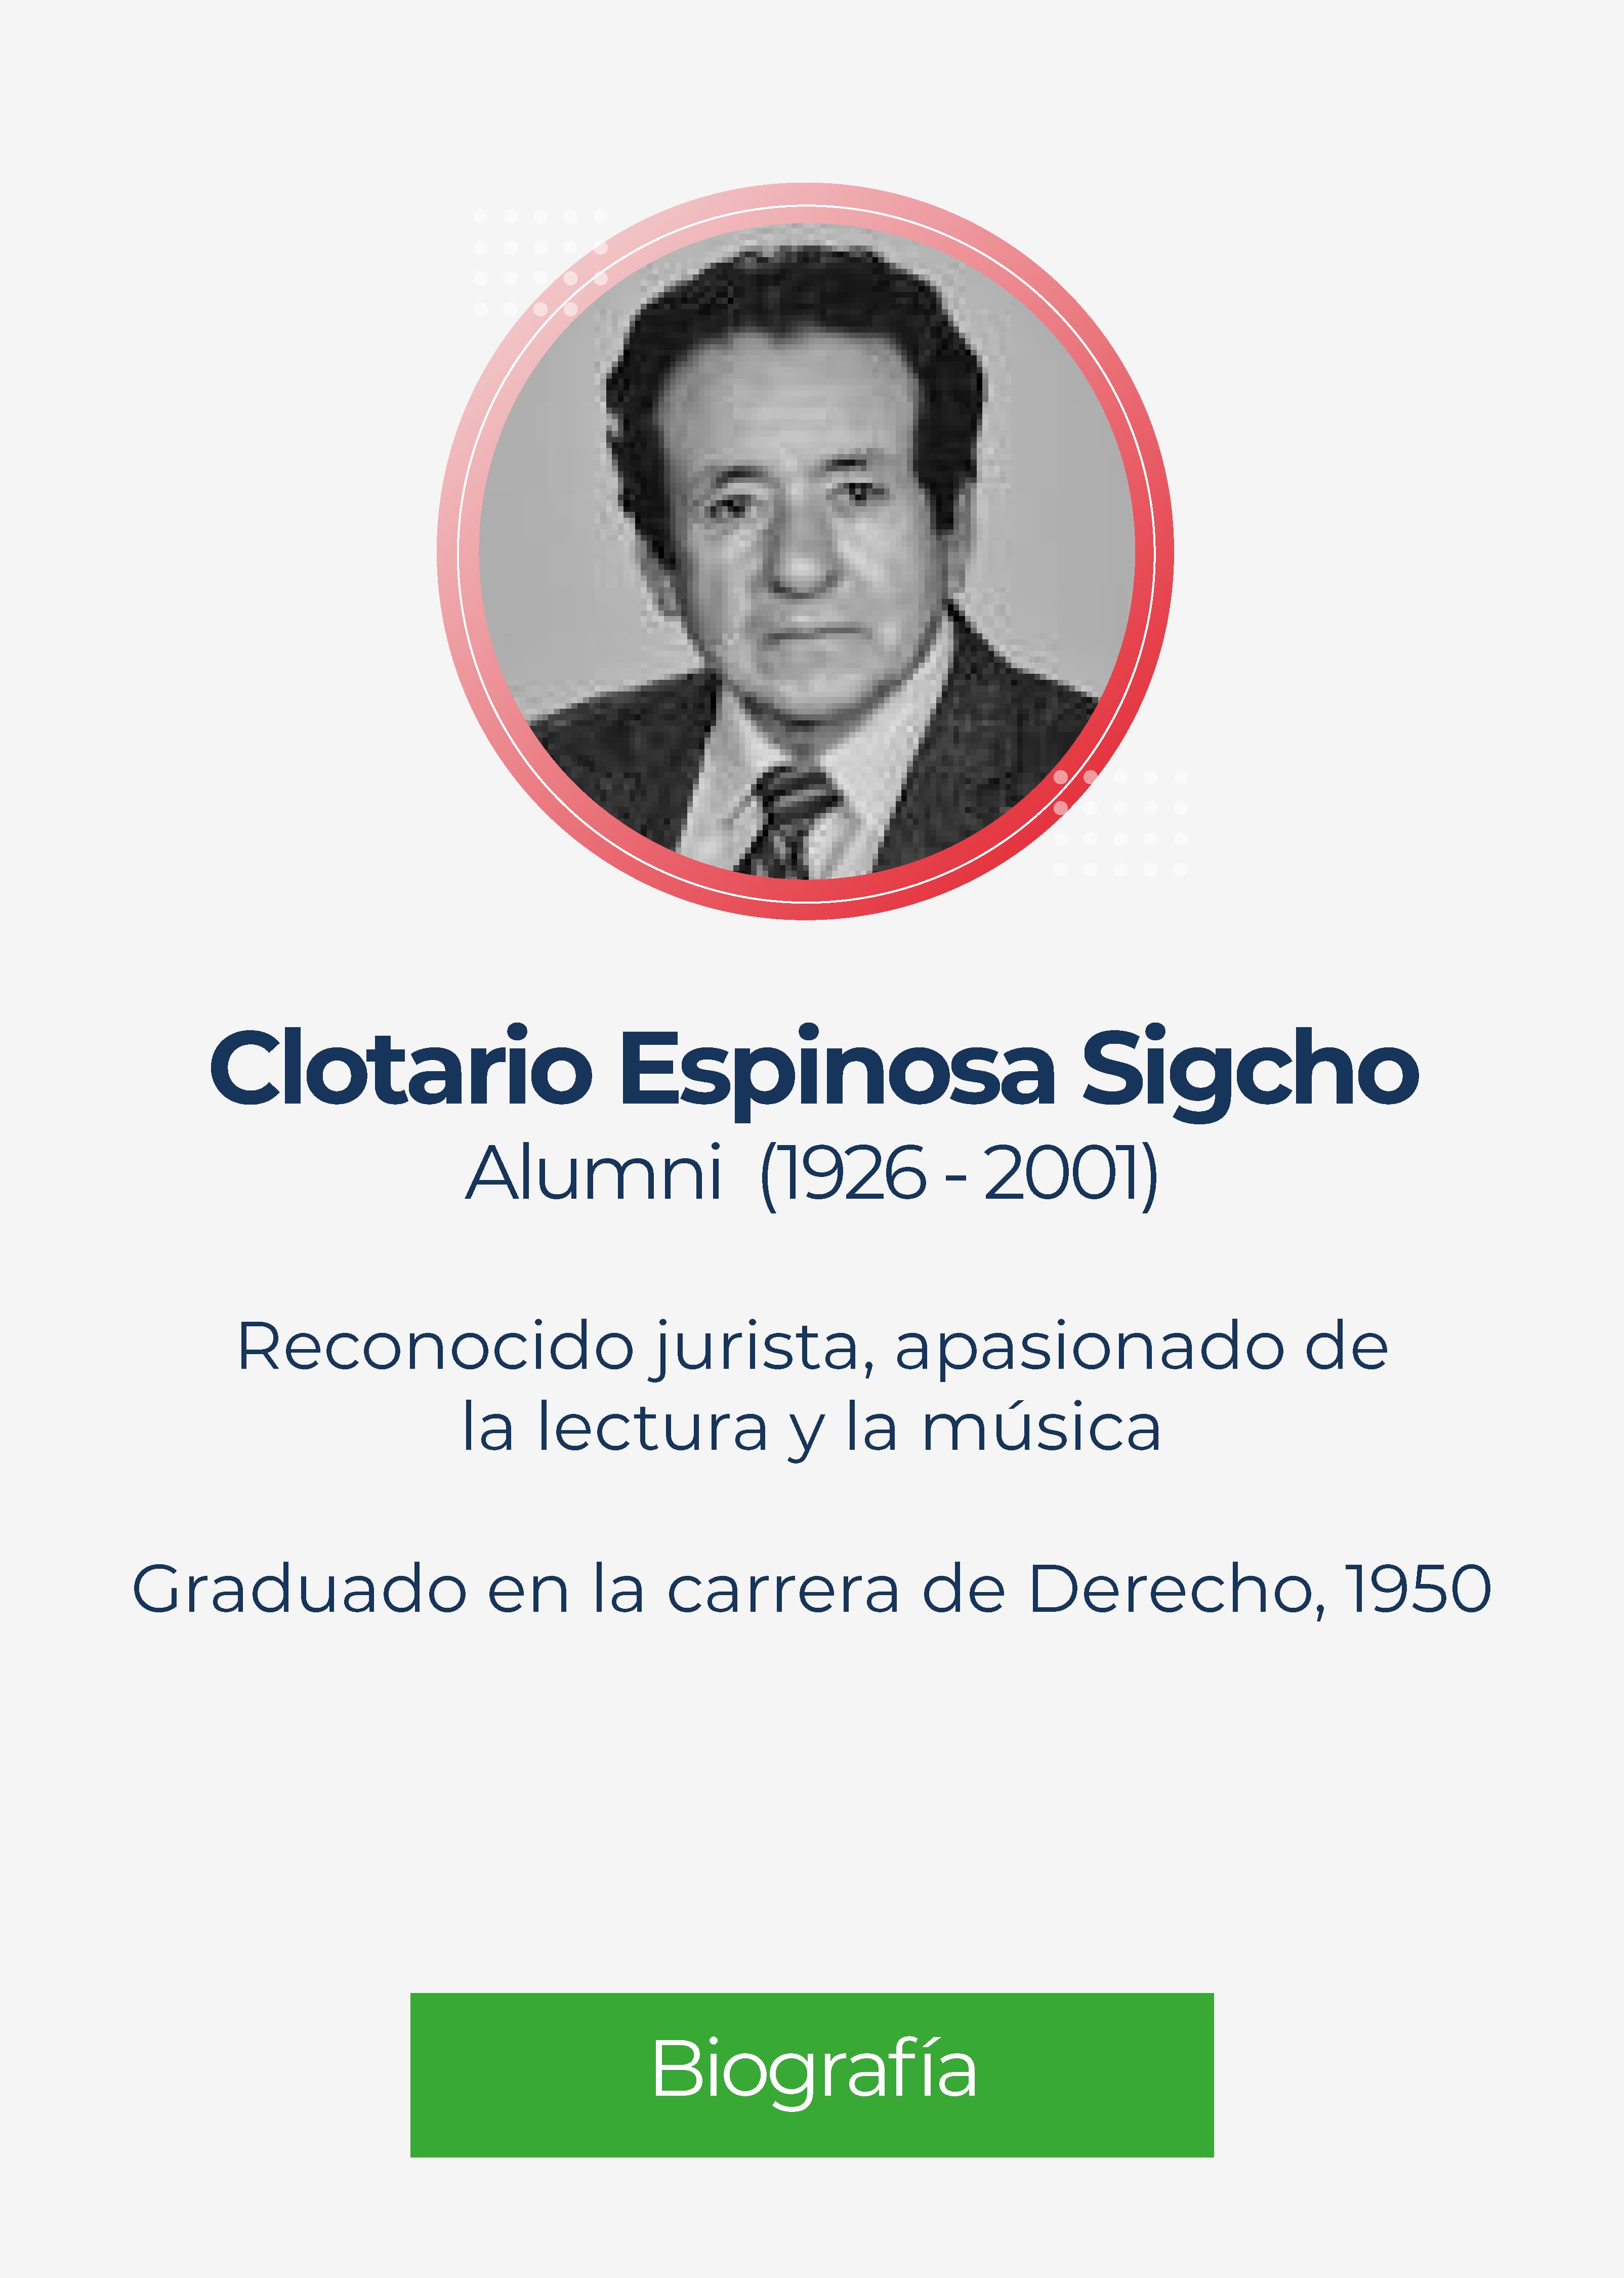 Clotario Minos Espinosa Sigcho